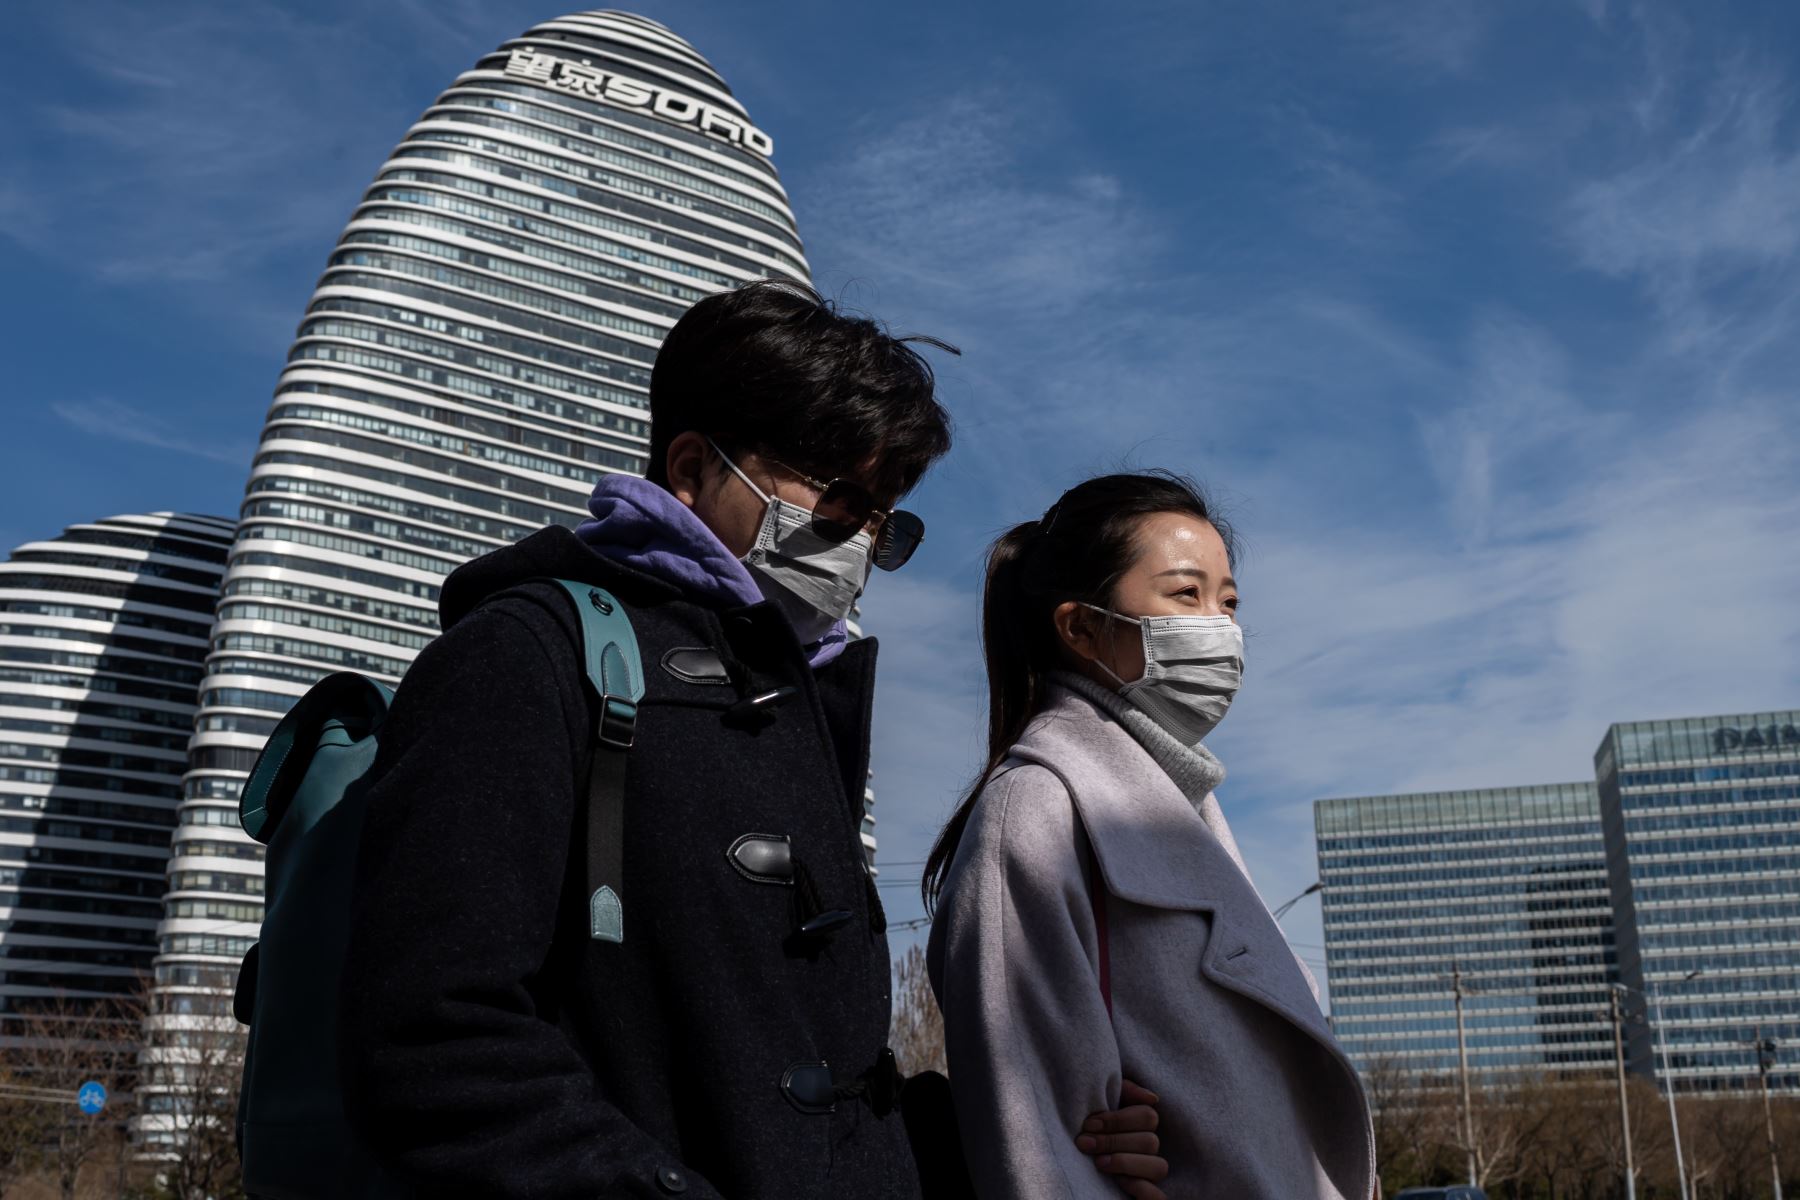 Las personas que usan mascarillas como medida preventiva contra el coronavirus COVID-19 caminan en una calle en Beijing. Foto: AFP